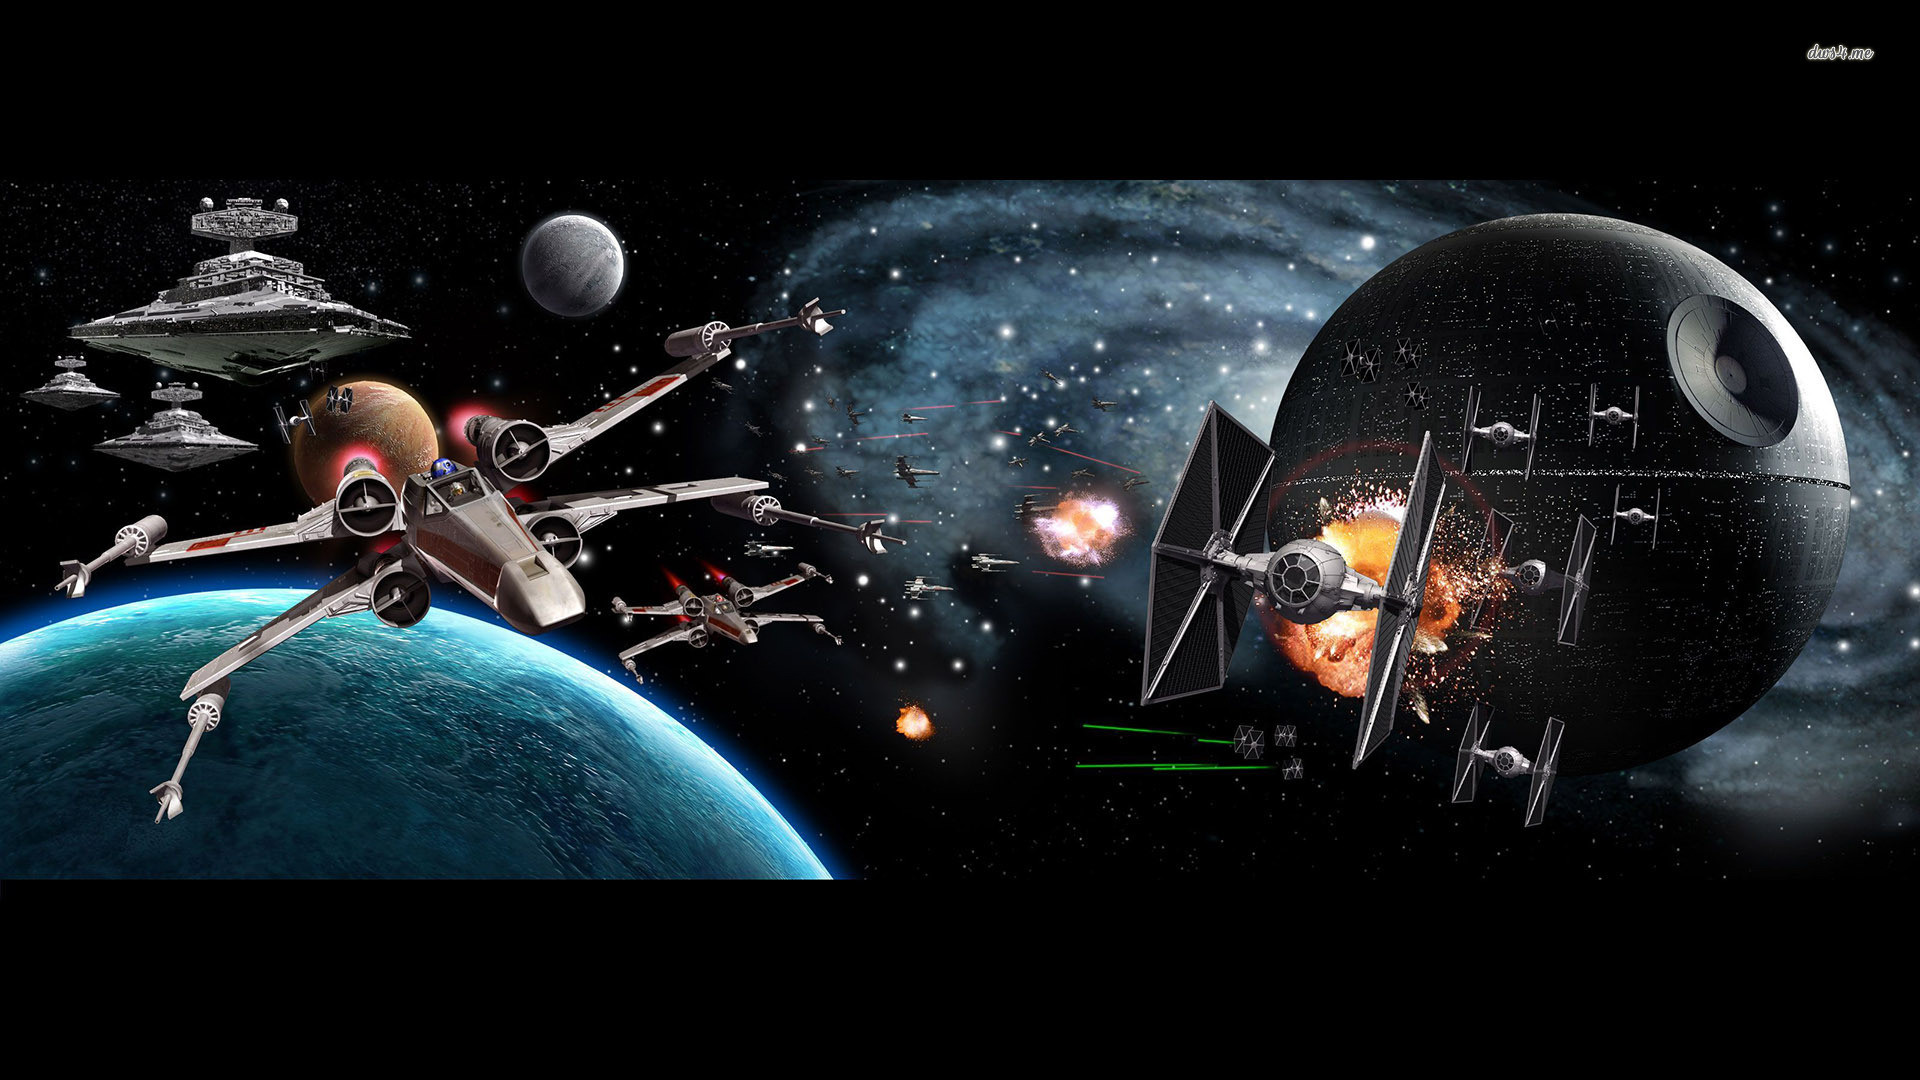 1920x1080 Movie - Star Wars X-Wing Star Destroyer Death Star TIE Fighter Wallpaper